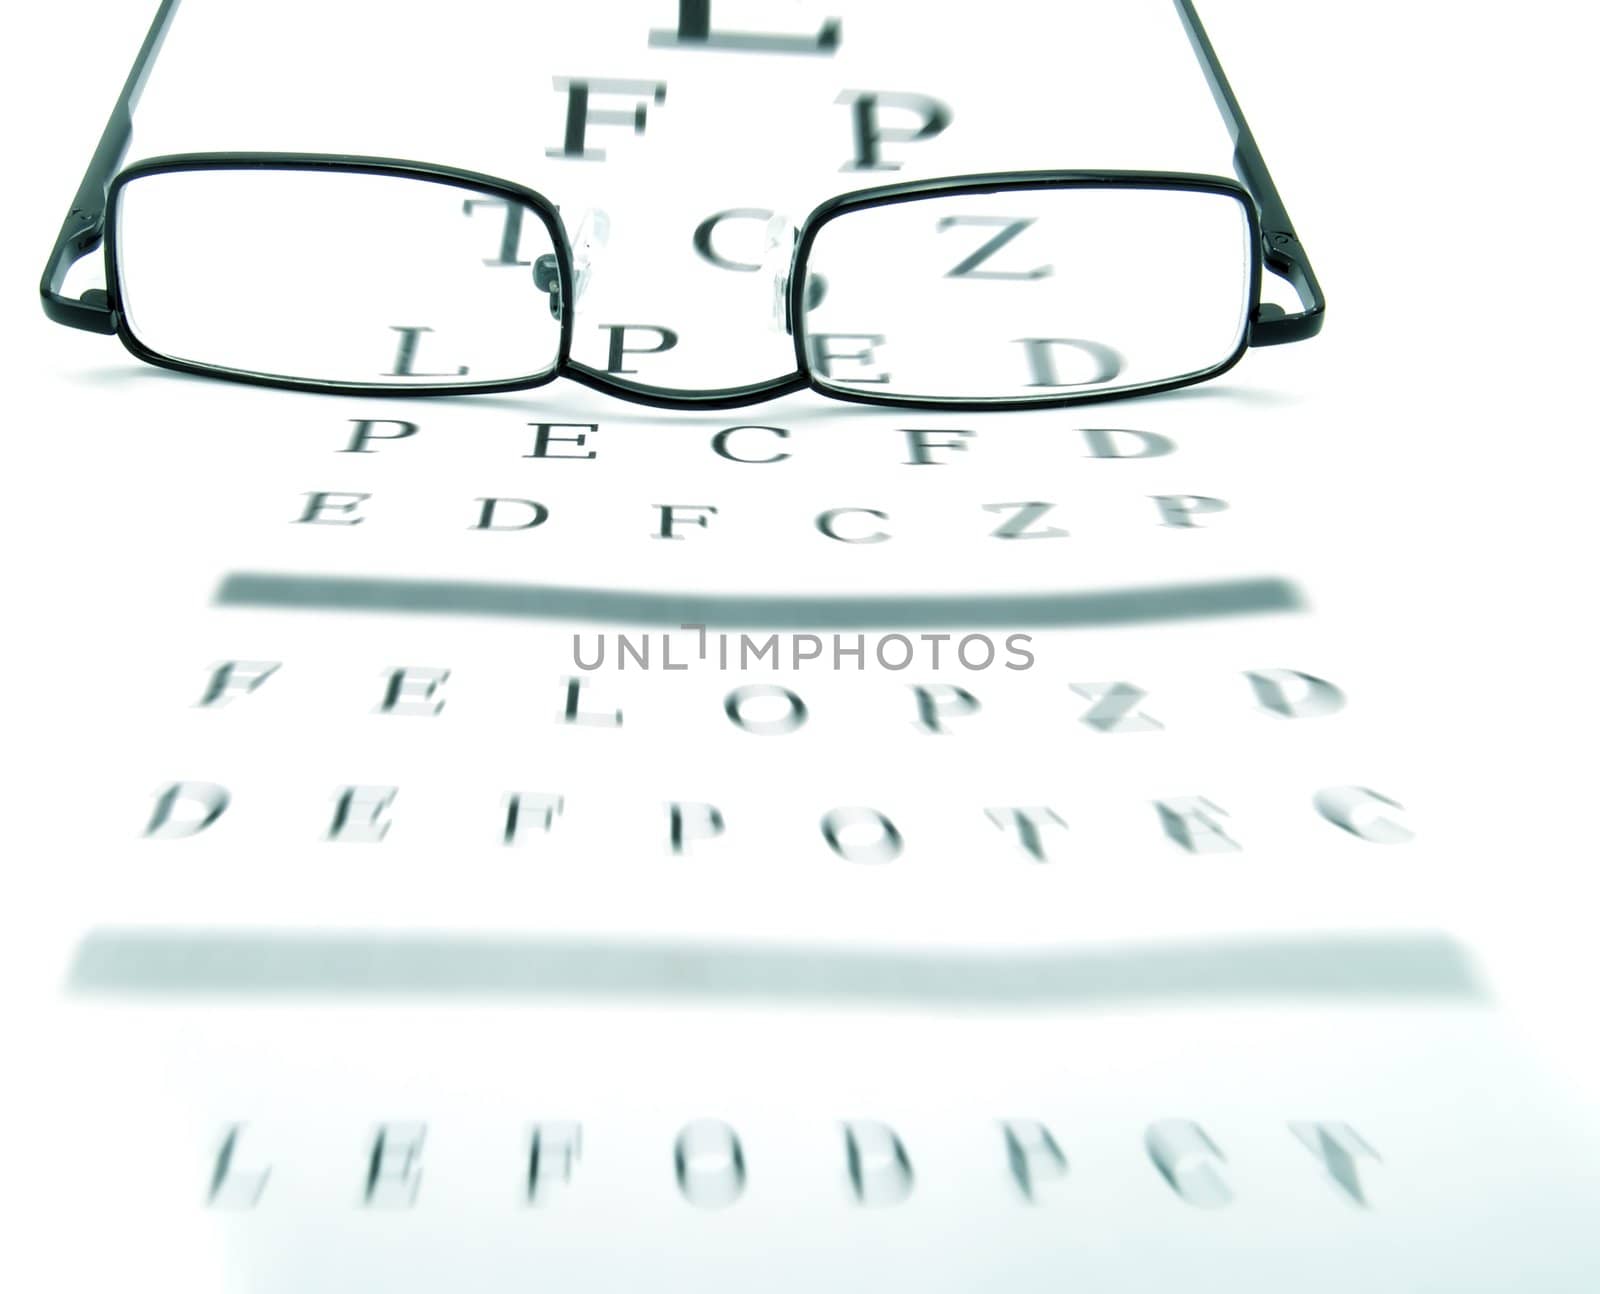 Eyeglasses by henrischmit